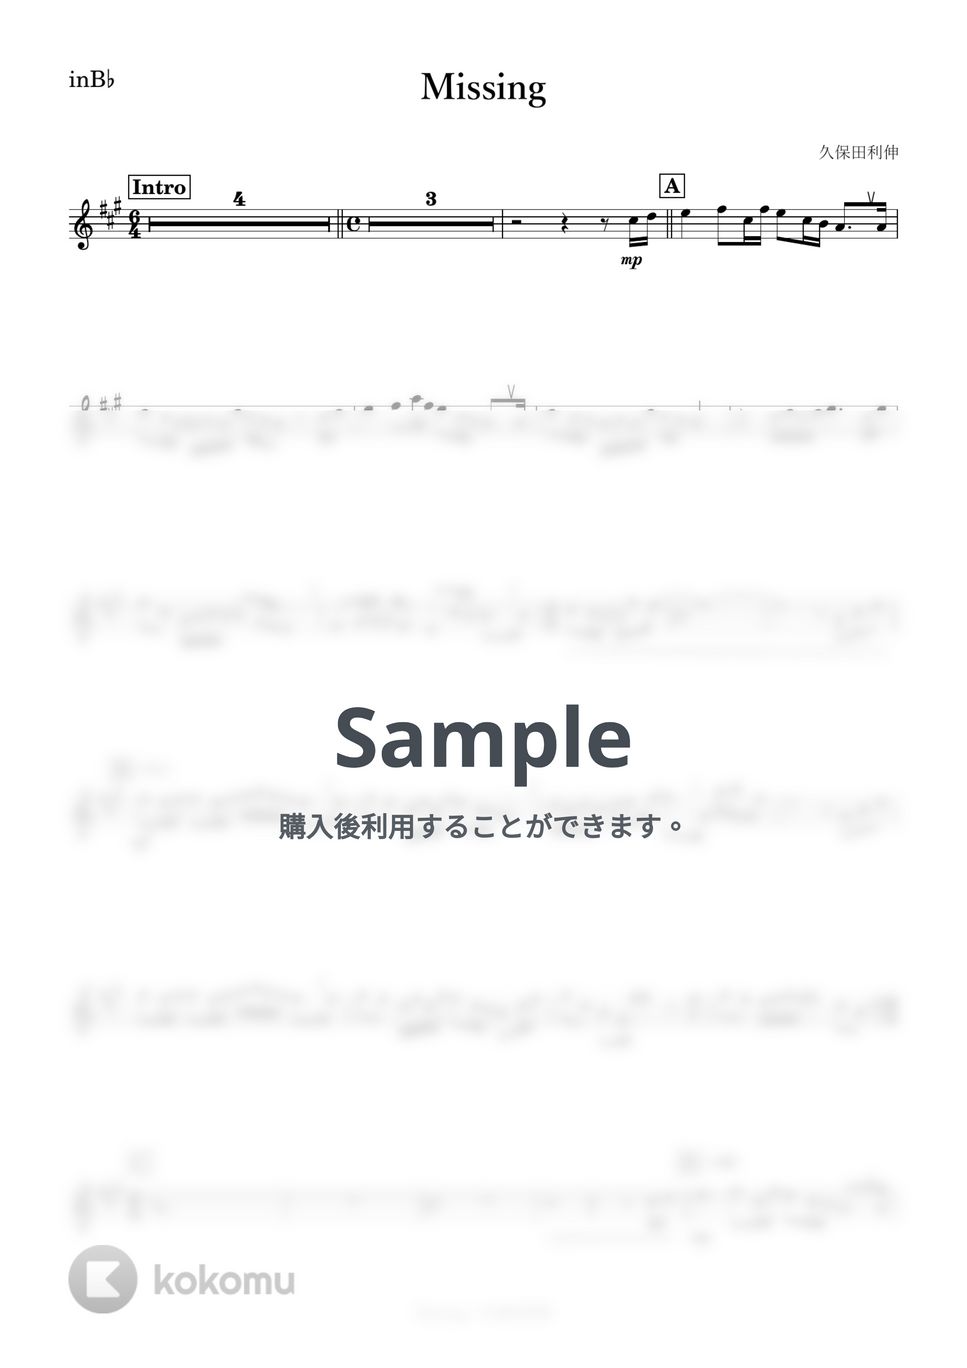 久保田利伸 - Missing (B♭) by kanamusic